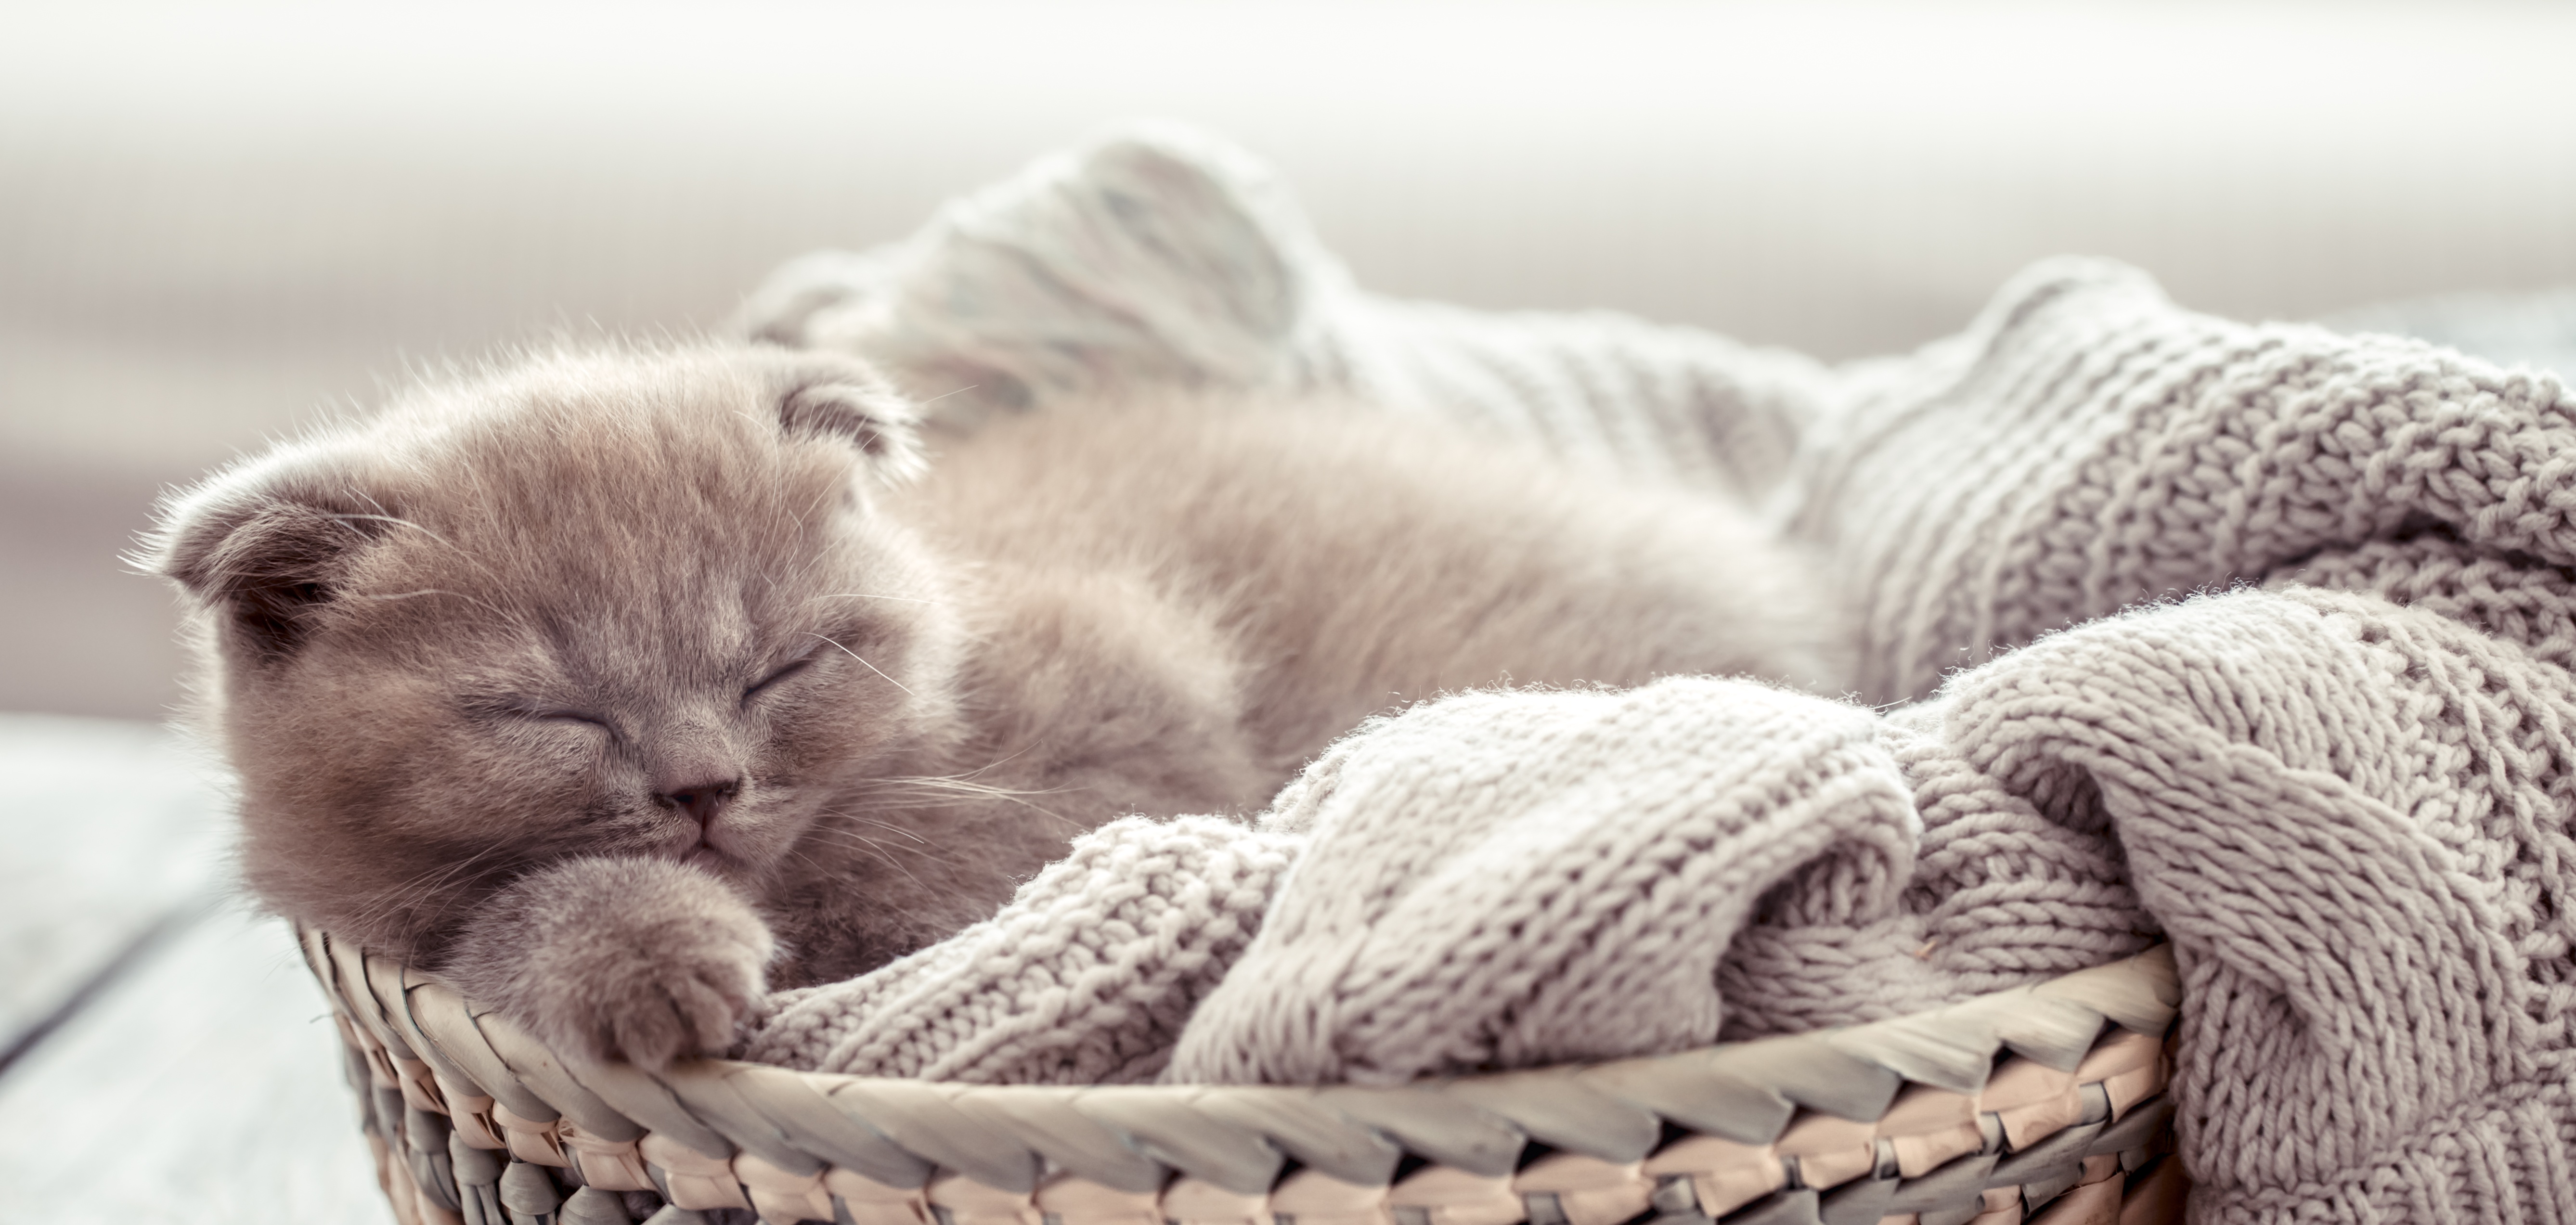 Kitten Baby Animal Sleeping Pet 5351x2545